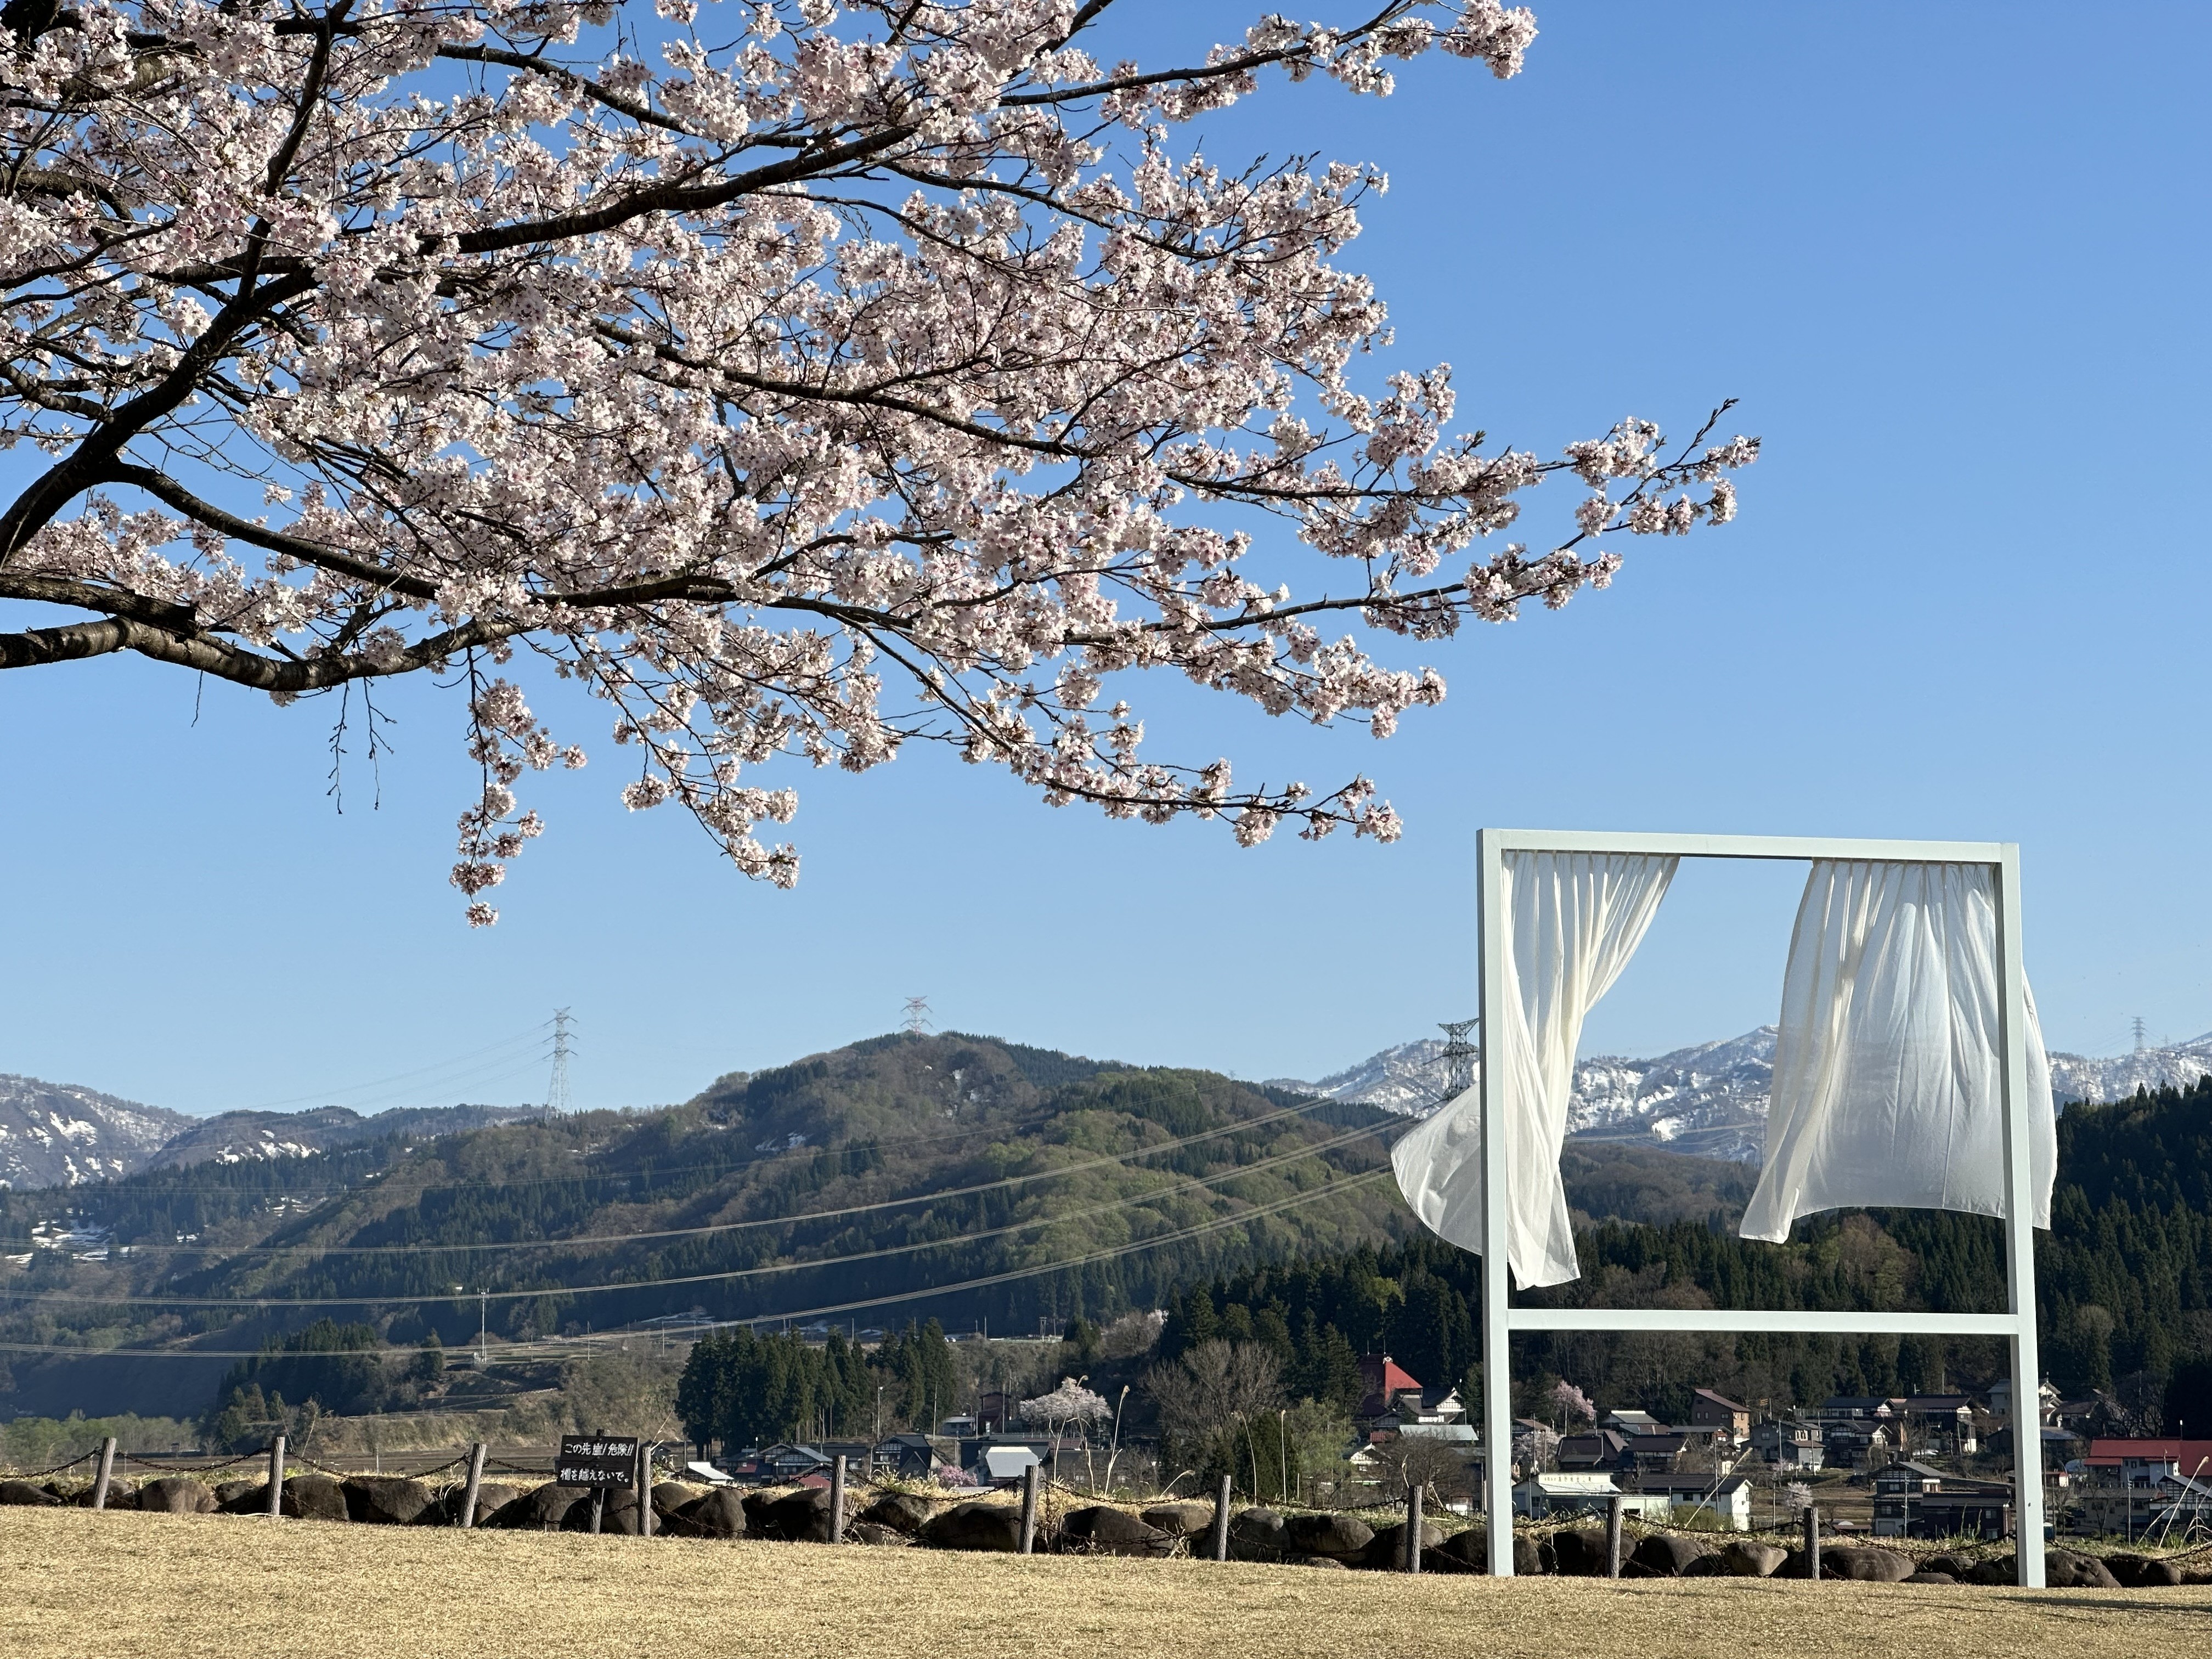 เทศกาลศิลปะของแผ่นดิน จัดขึ้นในพื้นที่เอจิโกะสึมาริของจังหวัดนีงาตะคืออะไร?